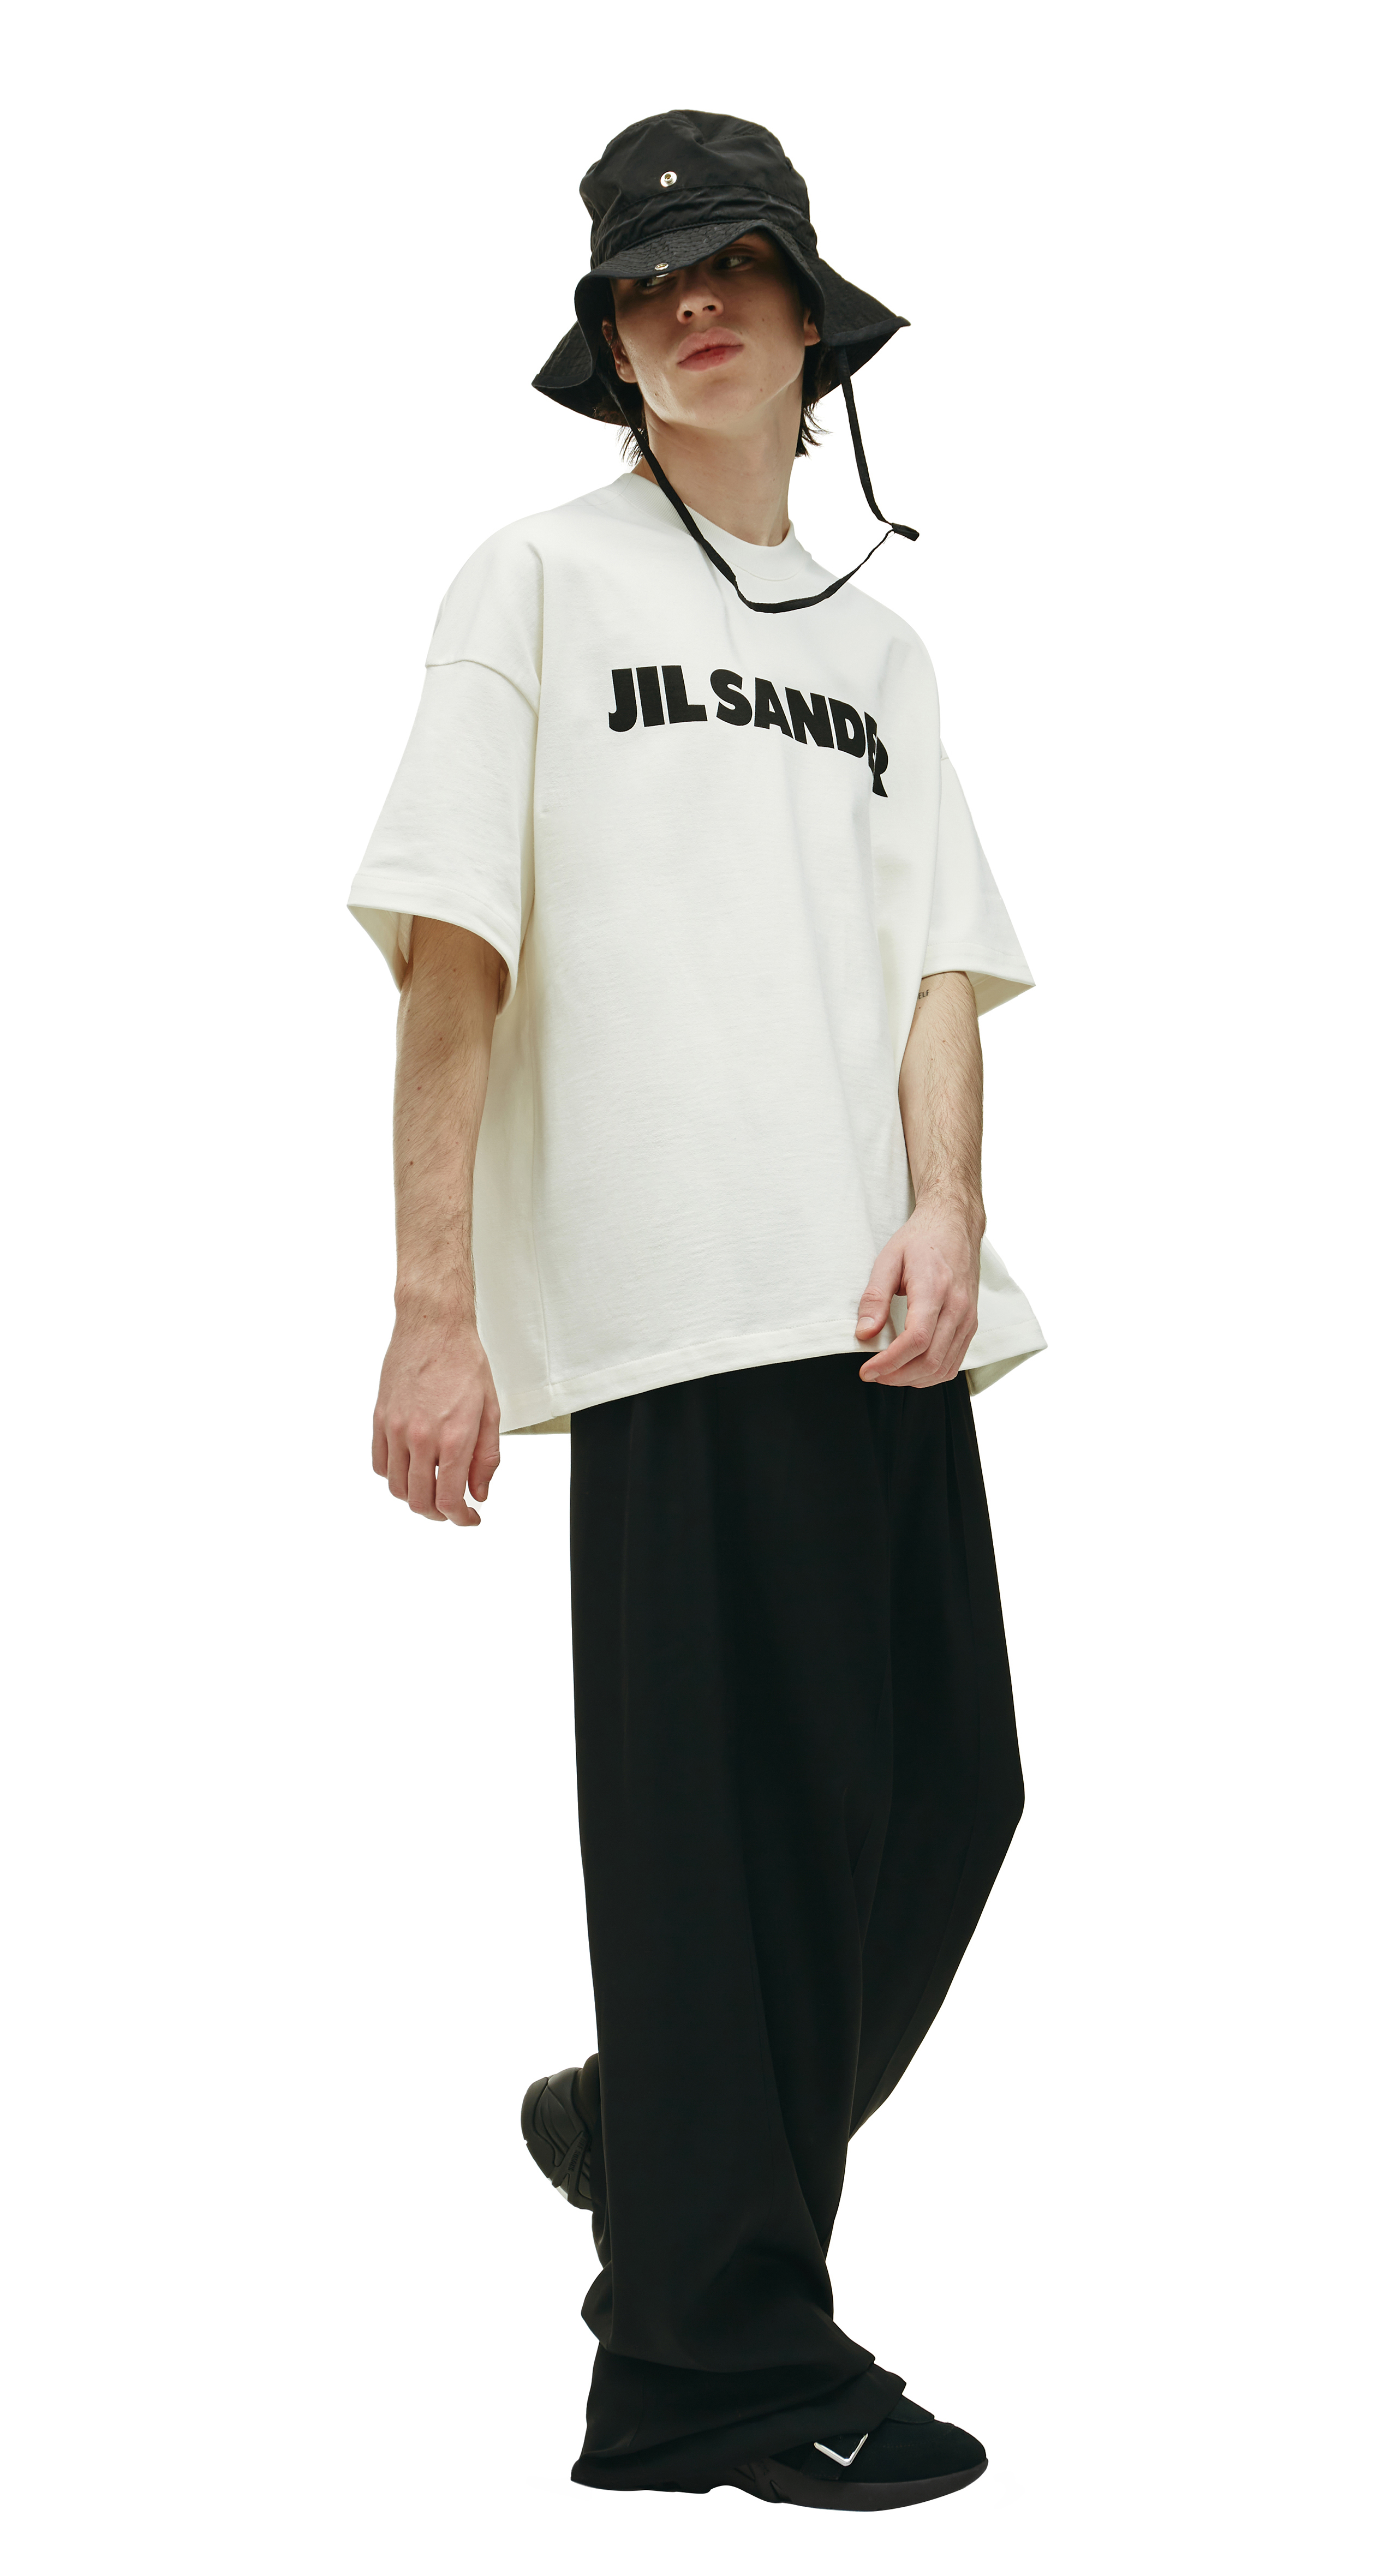 Buy Jil Sander men white logo oversized t-shirt for $380 online on 